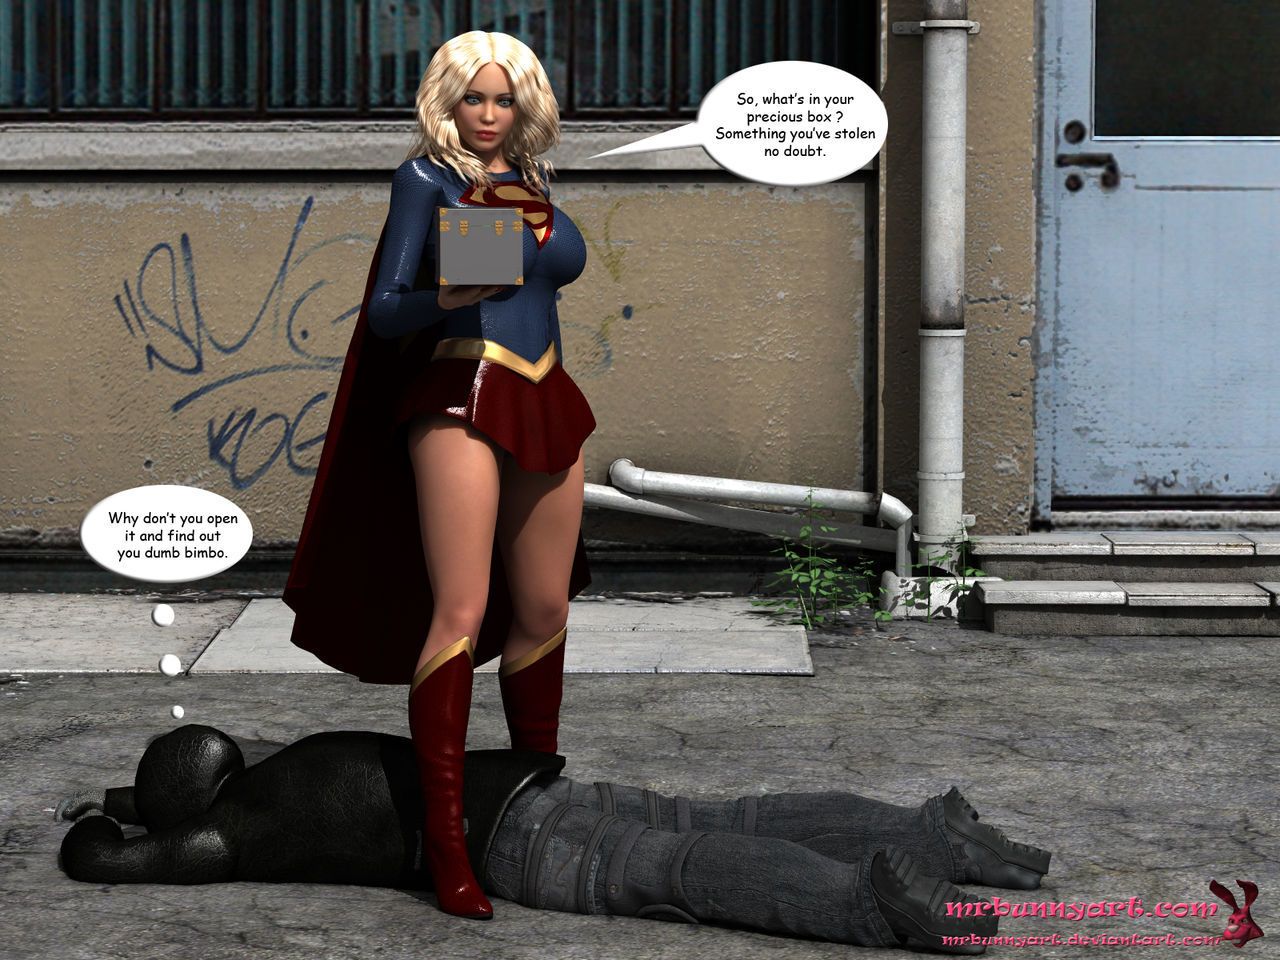 女超人 vs 该隐